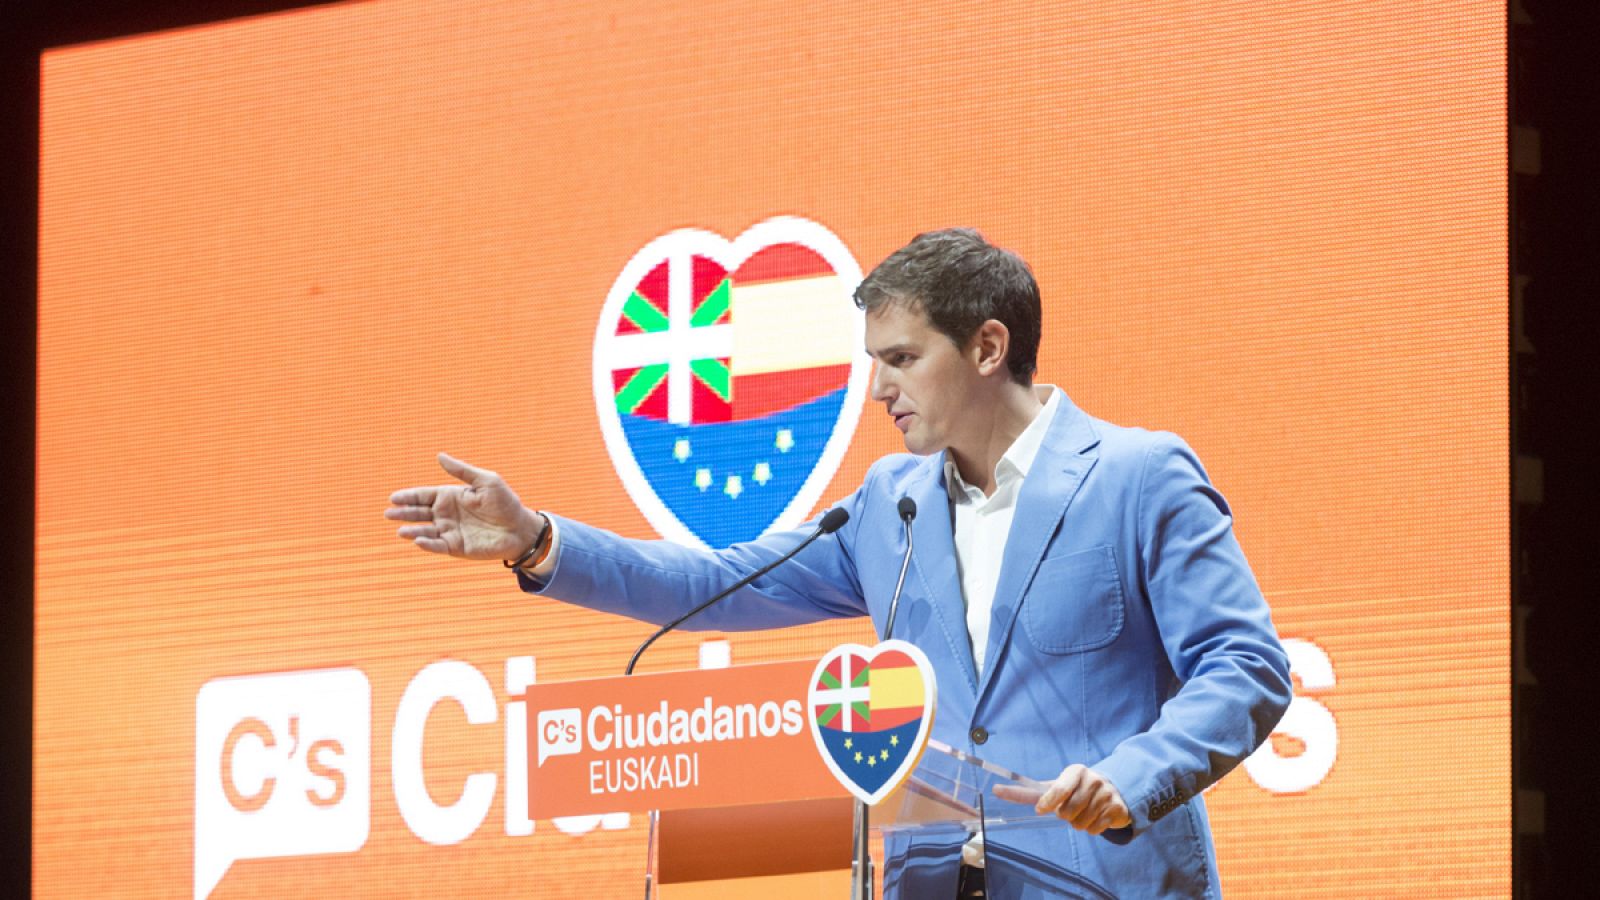 El líder de Ciudadanos, Albert Rivera, en un acto electoral en el País Vasco